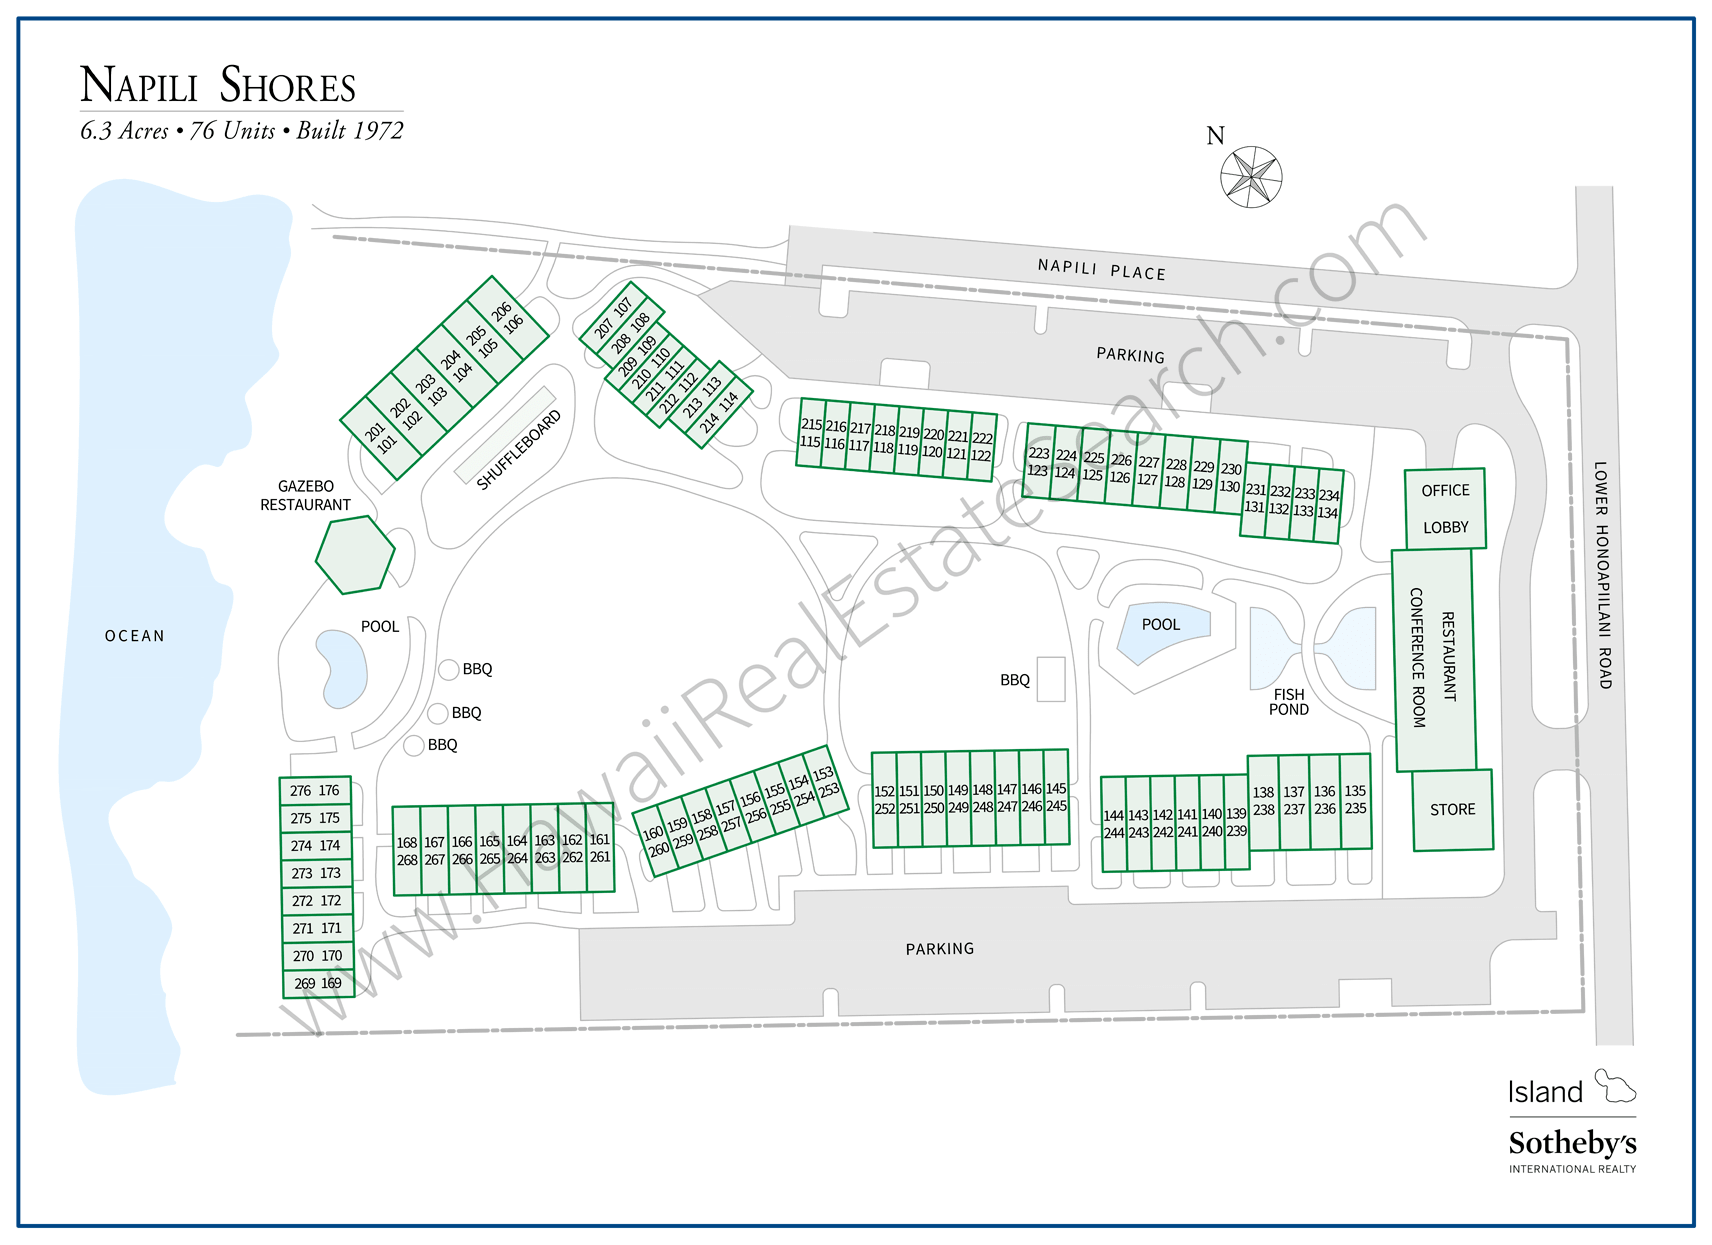 Napili Shores Property Map Updated 2018